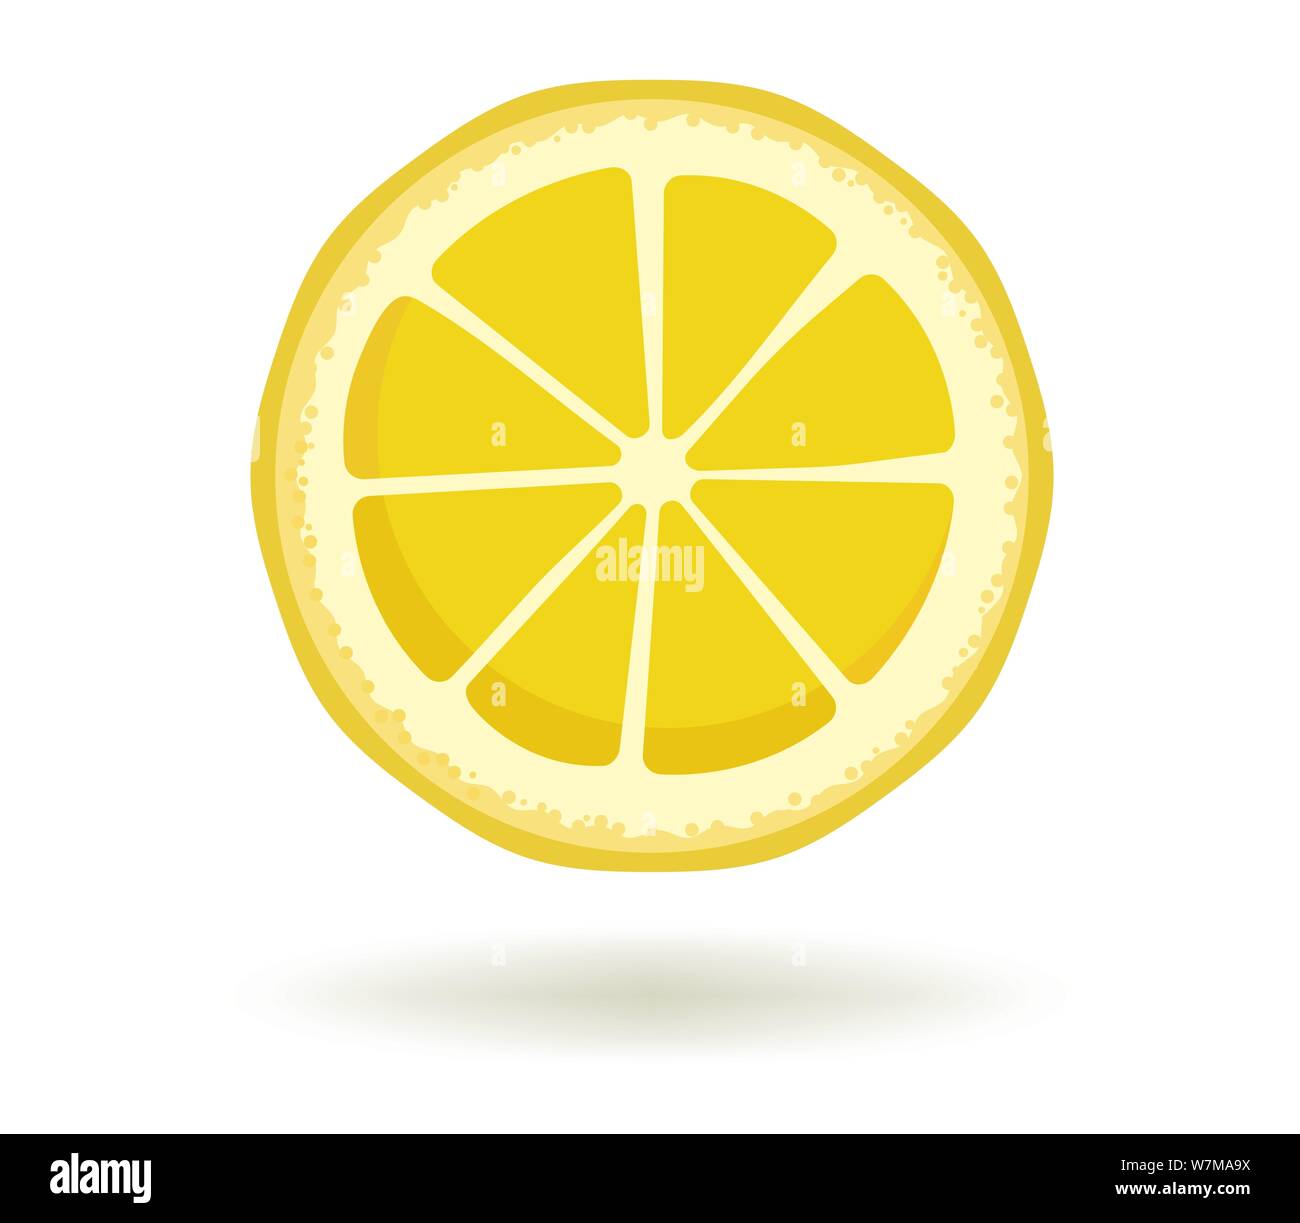 Agrumes.Vector illustration de tranche de citron jaune lumineuse ronde avec une ombre isolé sur un fond blanc. Modèle pour la conception d'animations, icône Illustration de Vecteur